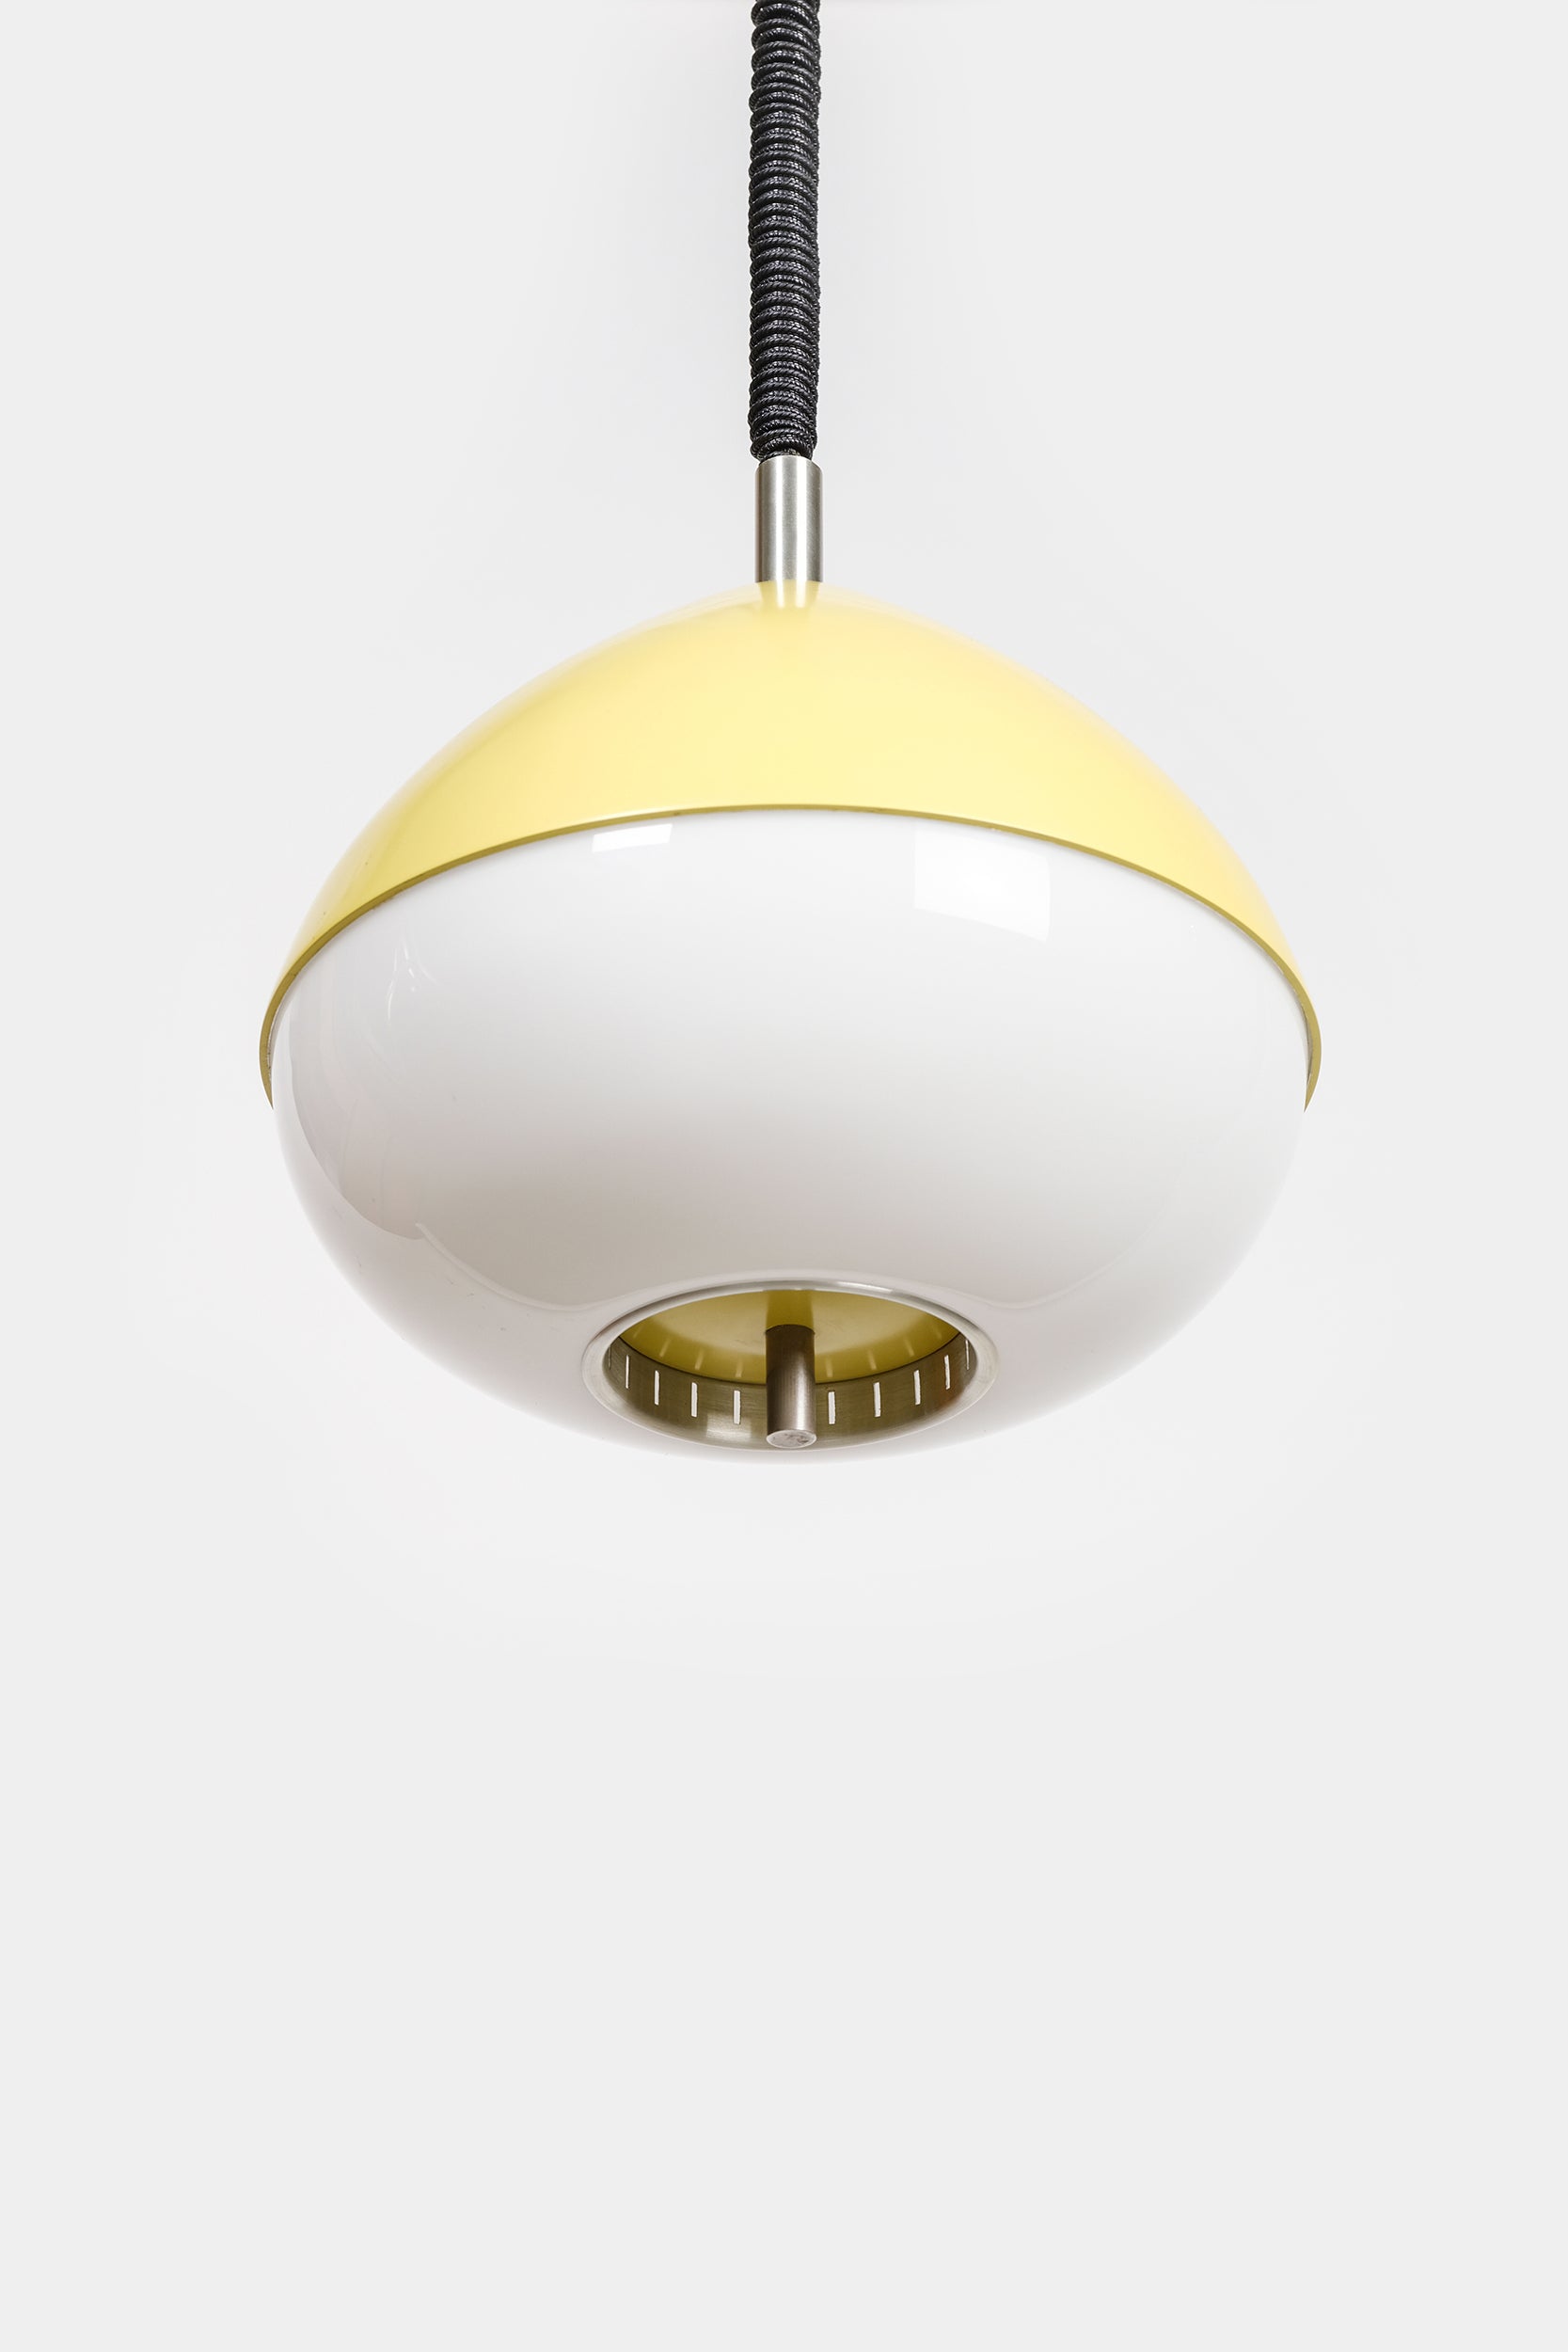 Stilnovo Attr. höhenverstellbare Deckenlampe, Italien, 50er